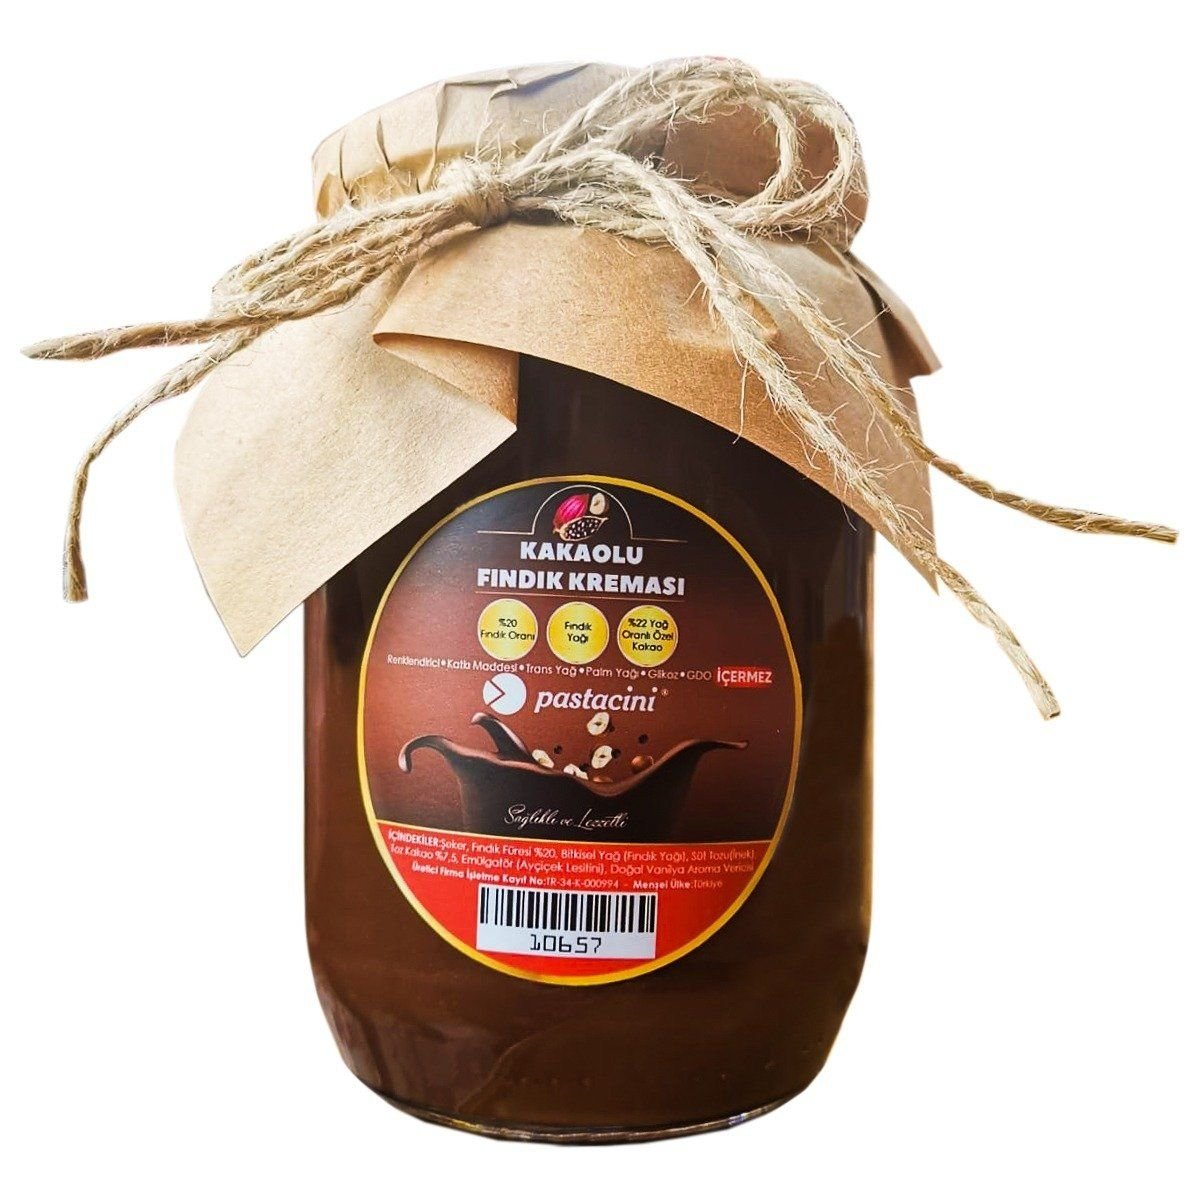 Kakaolu Fındık Kreması 800 gr.(Doğal Ürün)  PASTACİNİ  Spesiyal Çikolata